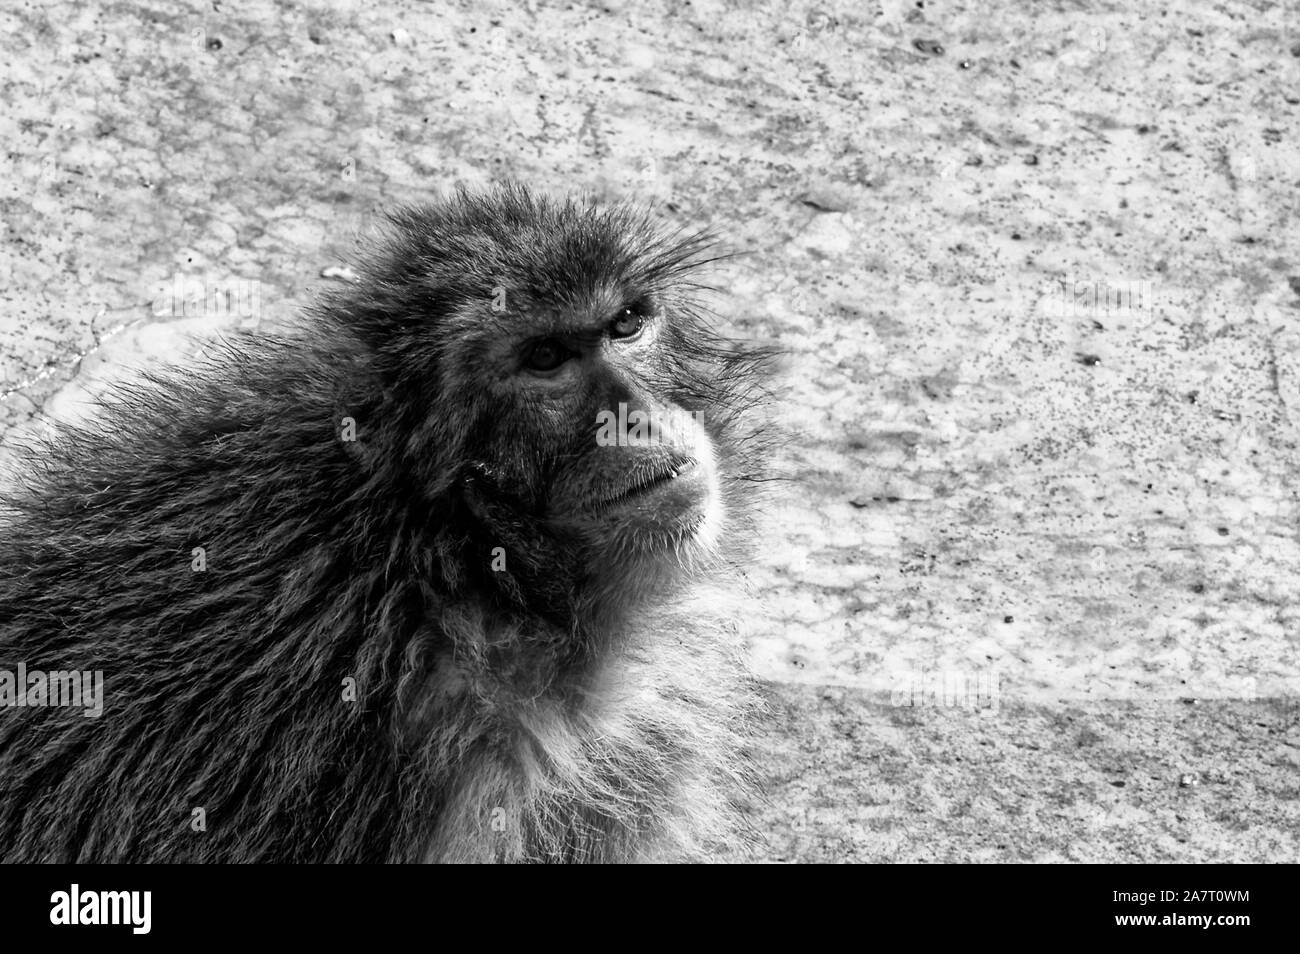 Mono blanco y negro imagen de archivo. Imagen de madera - 61701843